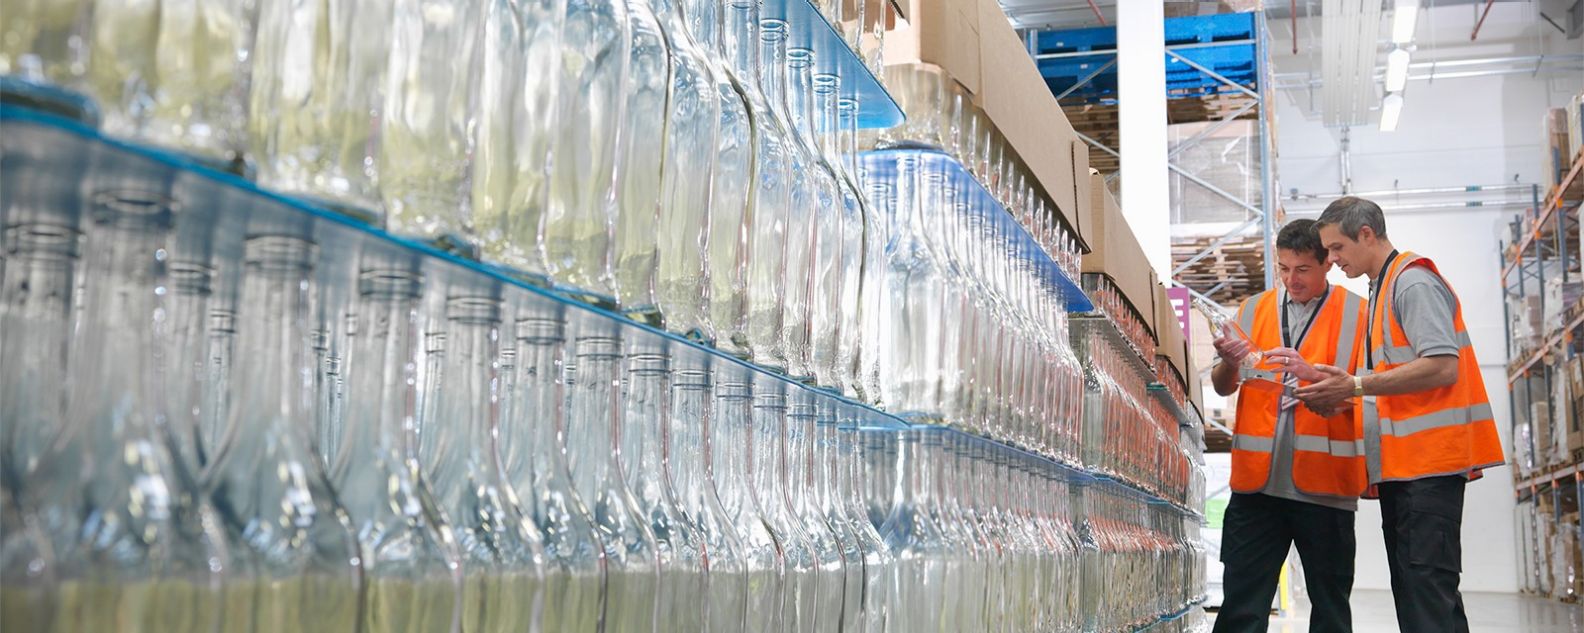 Dos trabajadores de una fábrica con chalecos naranjas examinan estanterías de botellas transparentes